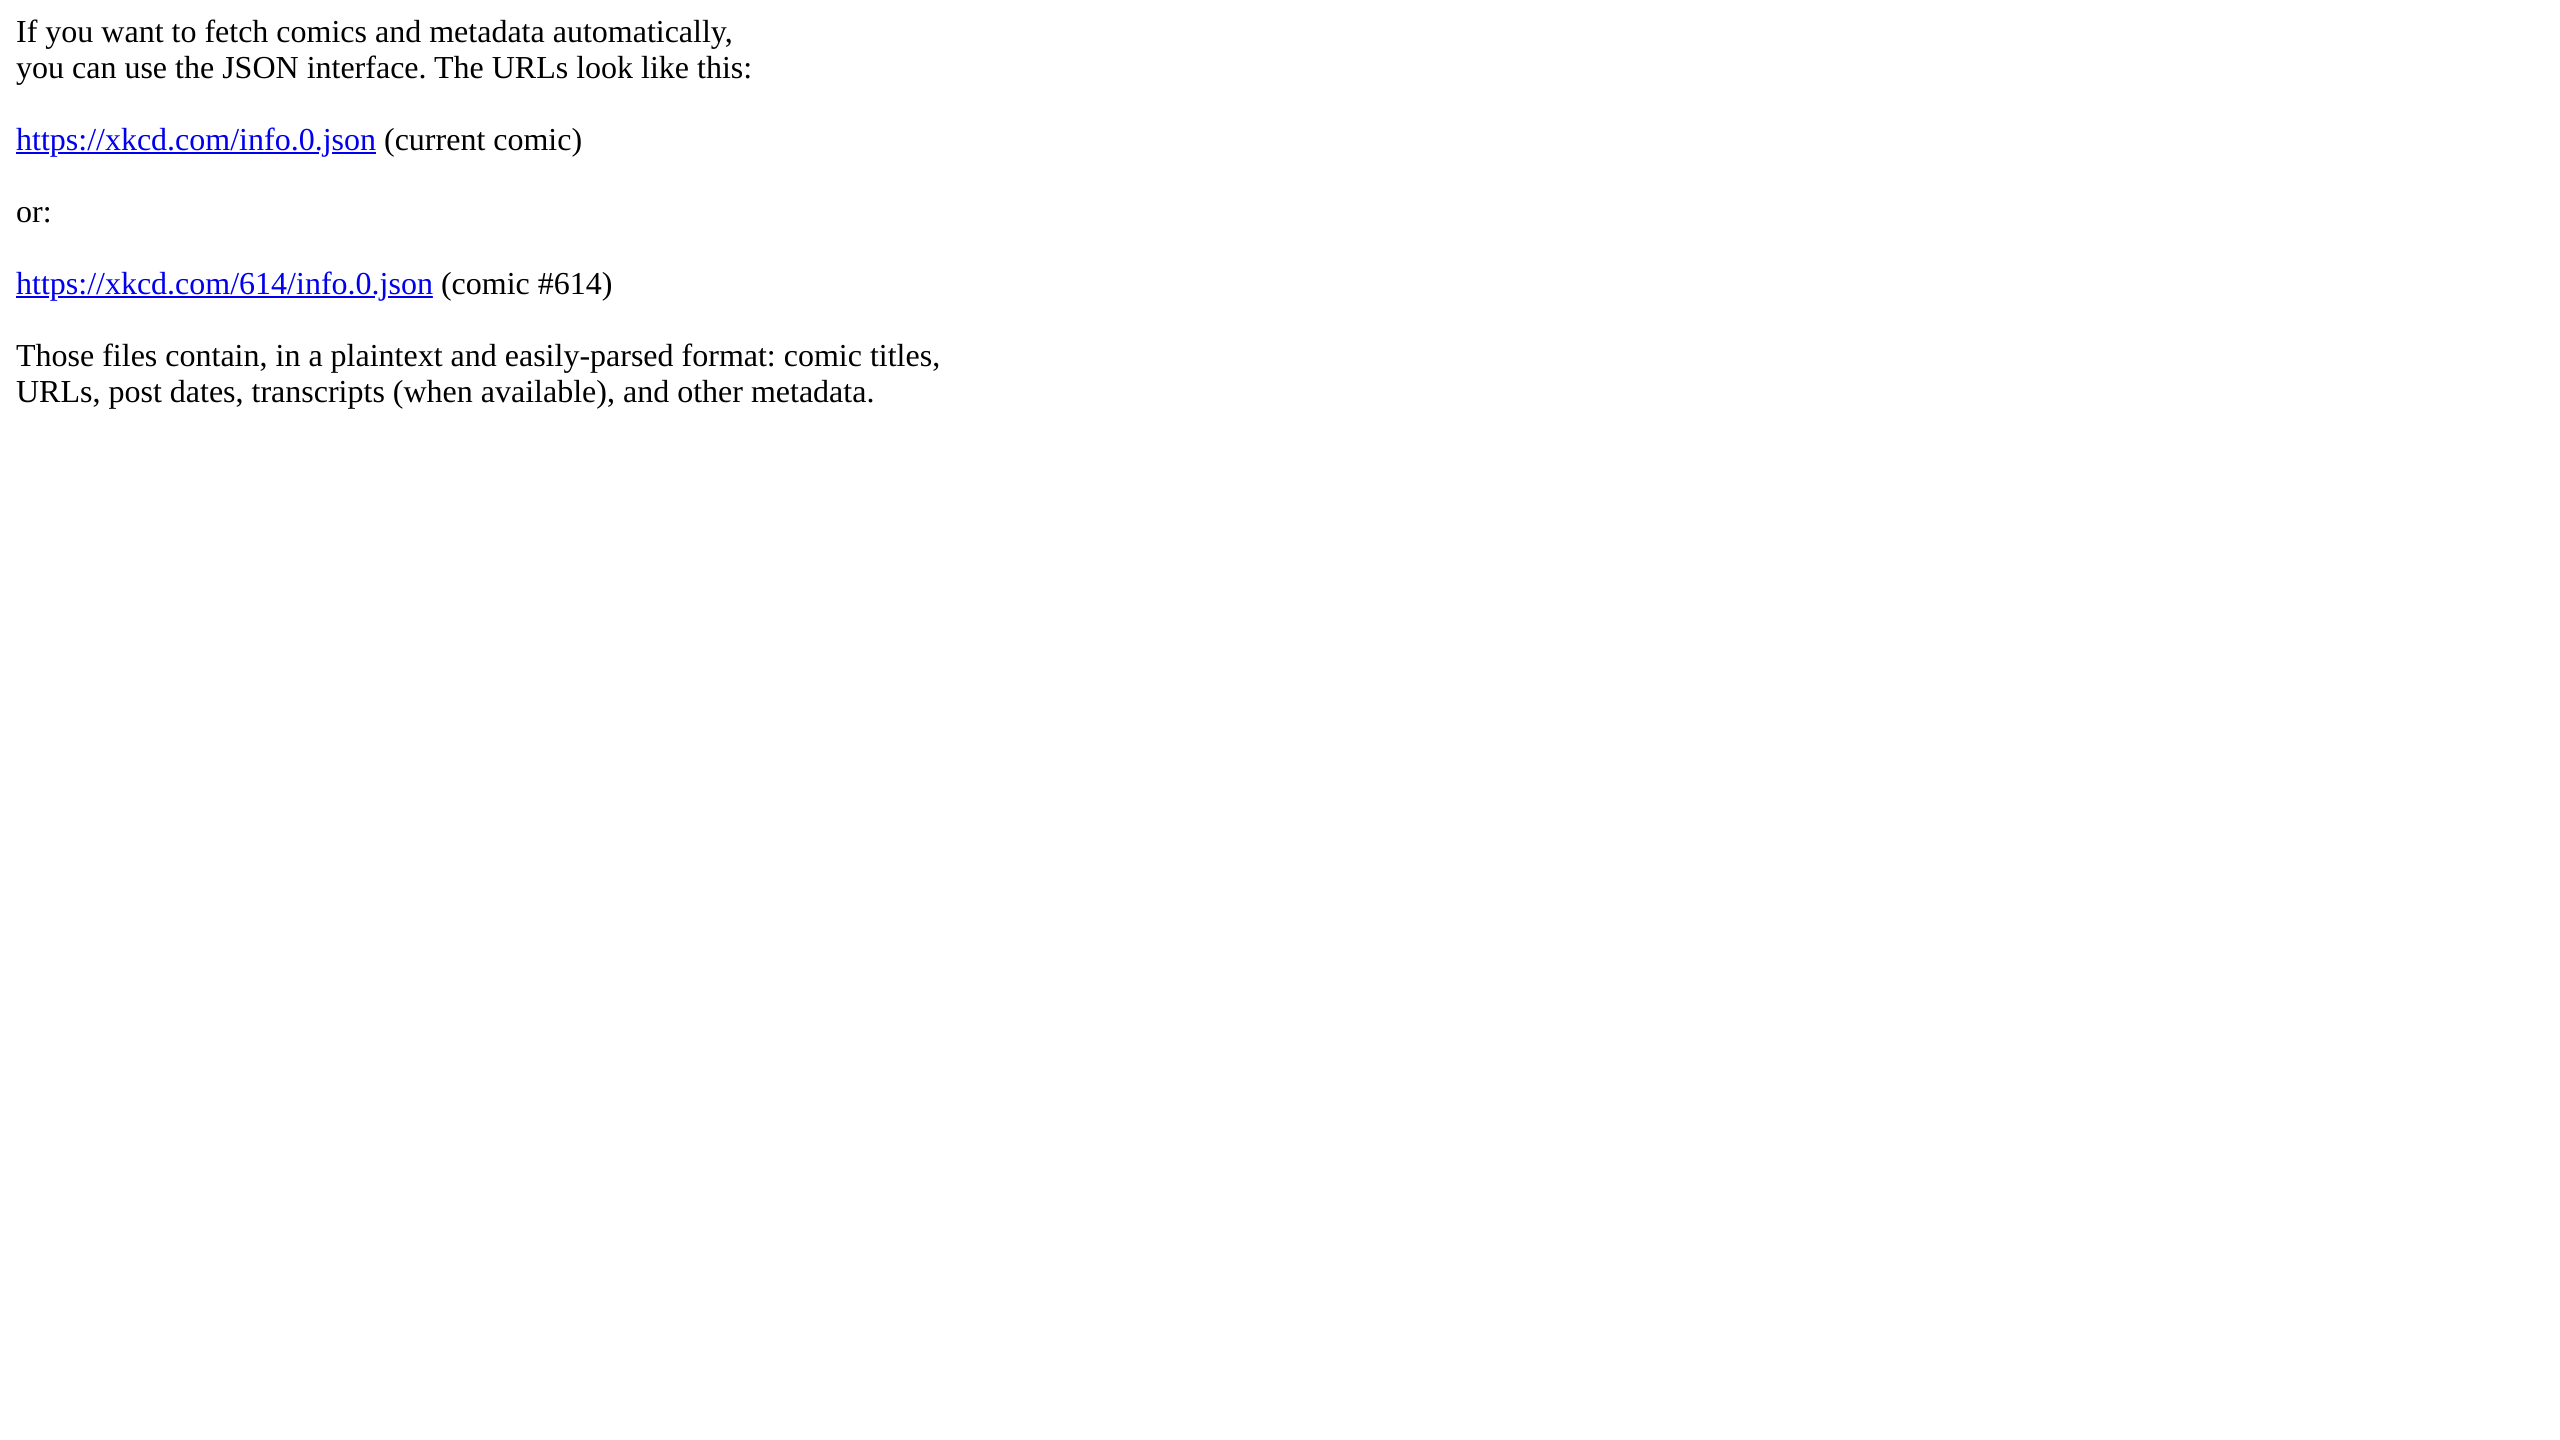 xkcd's website screenshot